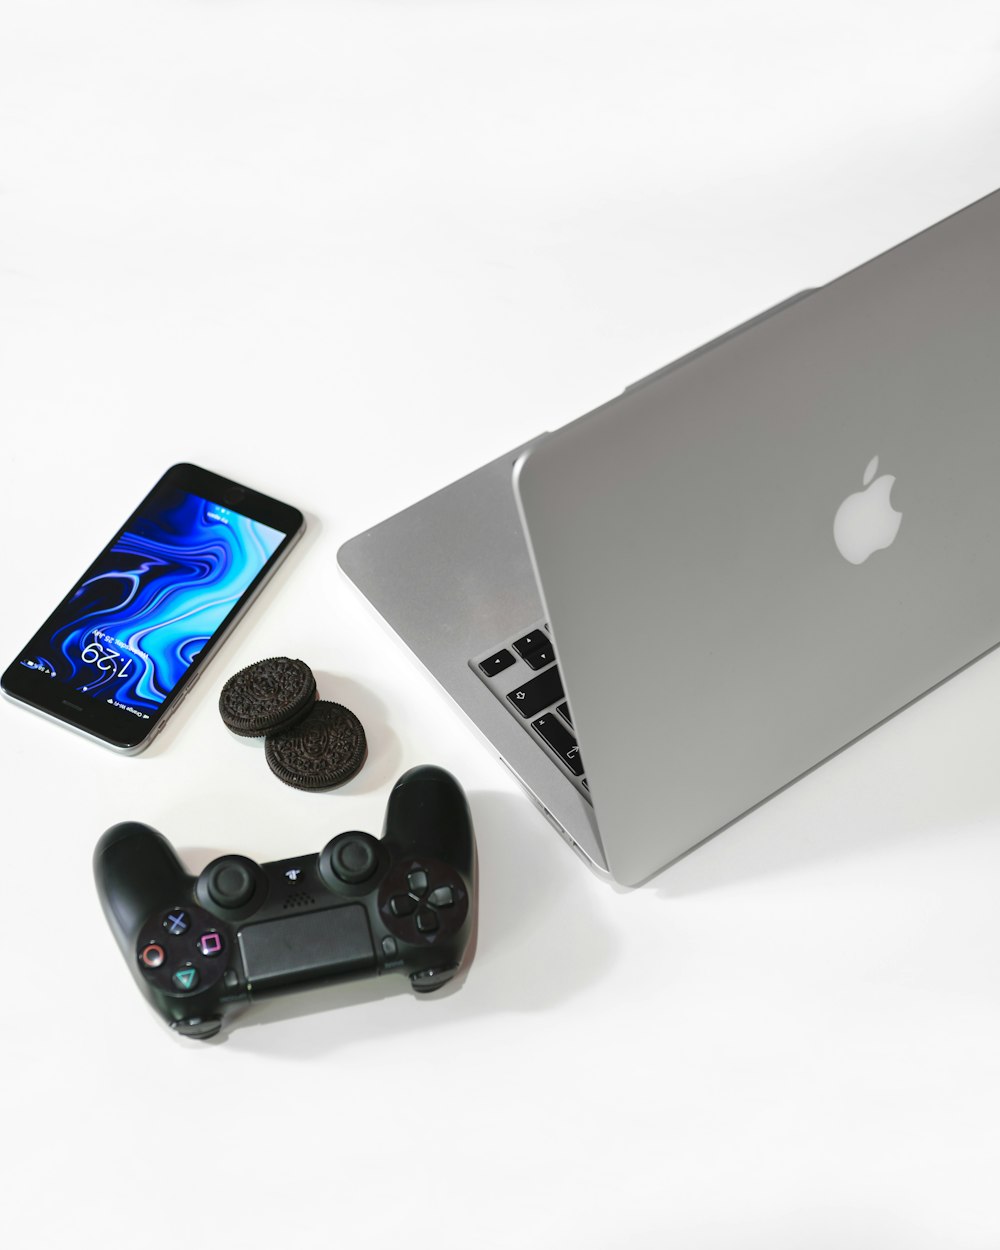 MacBook plateado junto al mando de juego negro de Sony